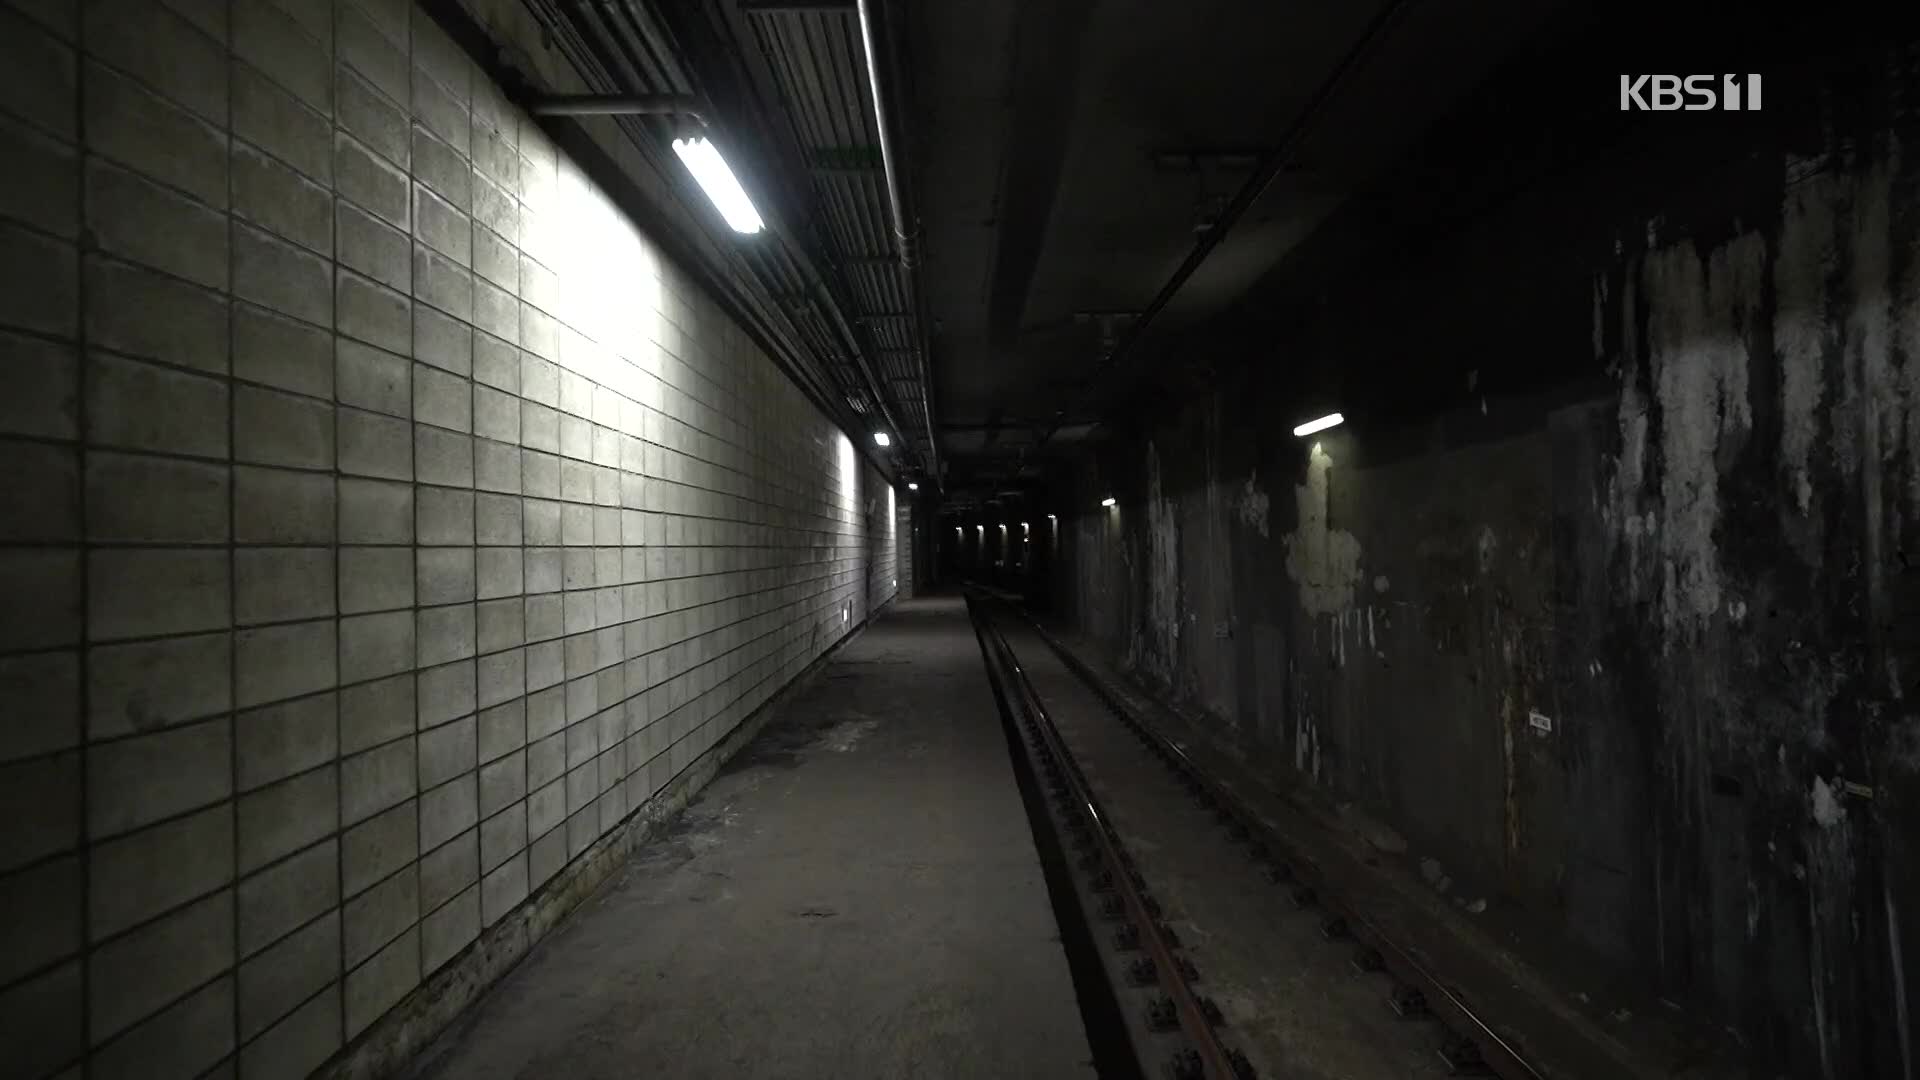 [크랩] 출입금지된 지하철역이 만들어진 이유